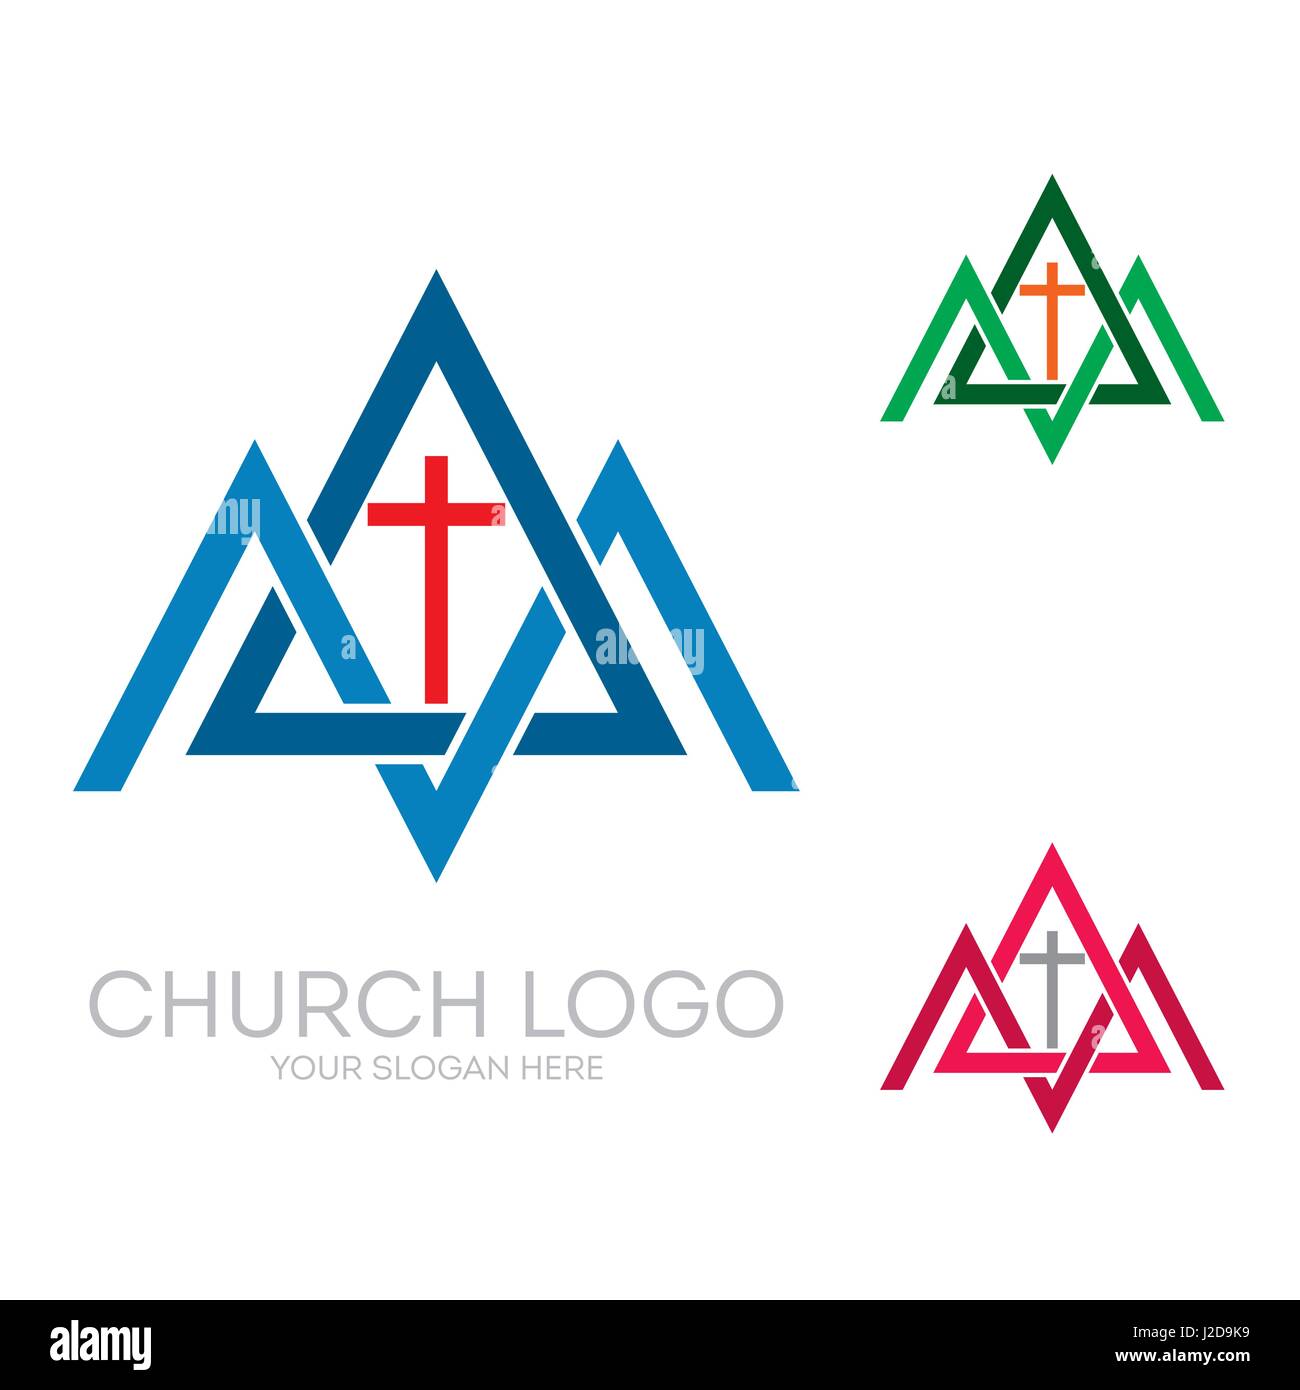 Logo de l'église. Symboles chrétiens. Des triangles, des montagnes, de la croix de Jésus. Illustration de Vecteur